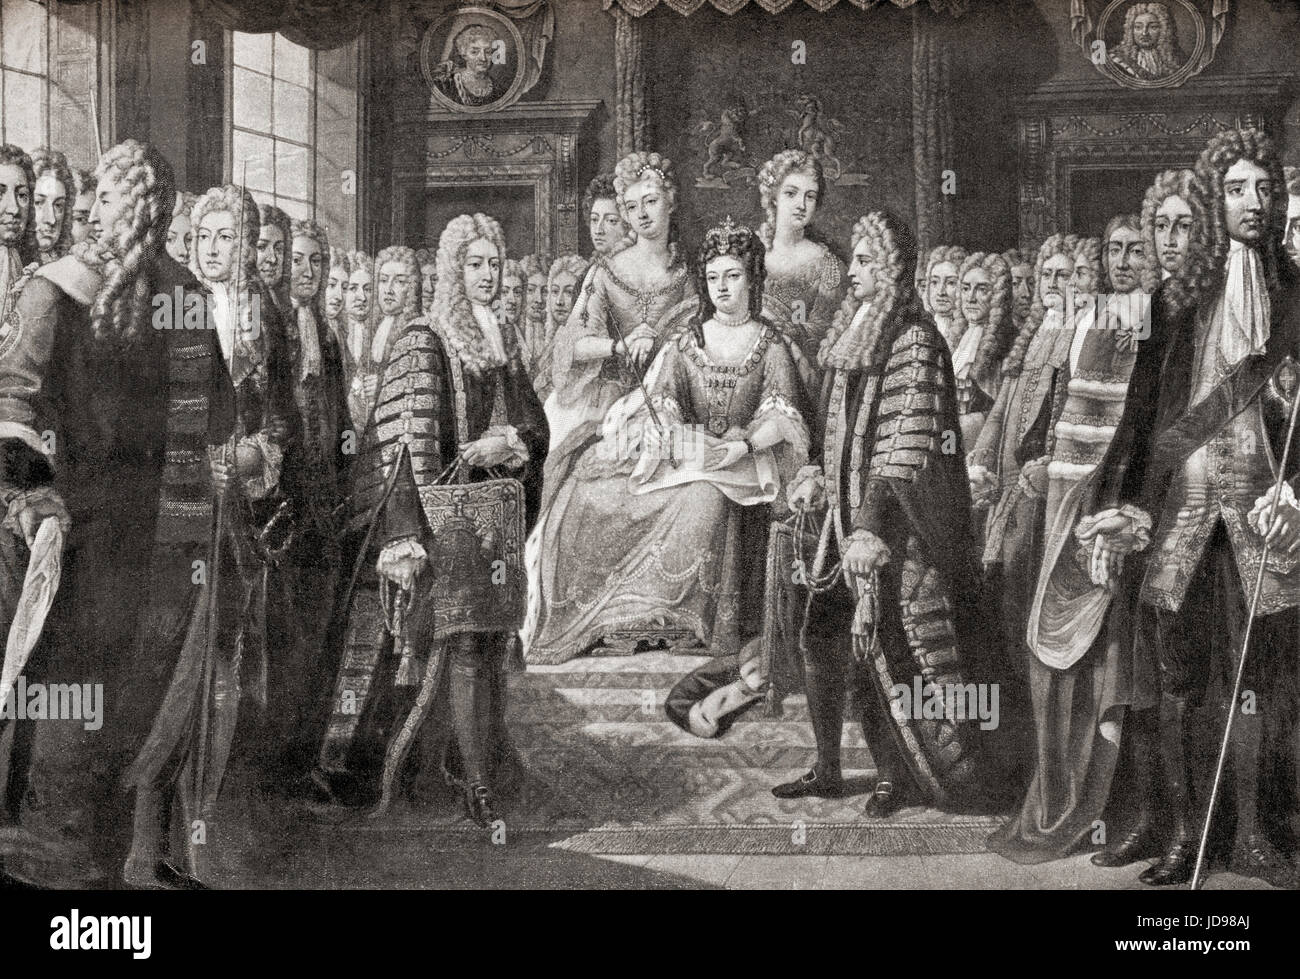 Les articles de l'acte d'union entre l'Angleterre et l'Écosse, qui est entrée en vigueur le 1er mai 1707 et a créé le seul, Royaume-Uni de Grande-Bretagne, présenté par les commissaires de la Reine Anne, 1706. Anne, 1665 - 1714. Reine d'Angleterre, d'Écosse et d'Irlande. L'histoire de Hutchinson de l'ONU, publié en 1915. Banque D'Images